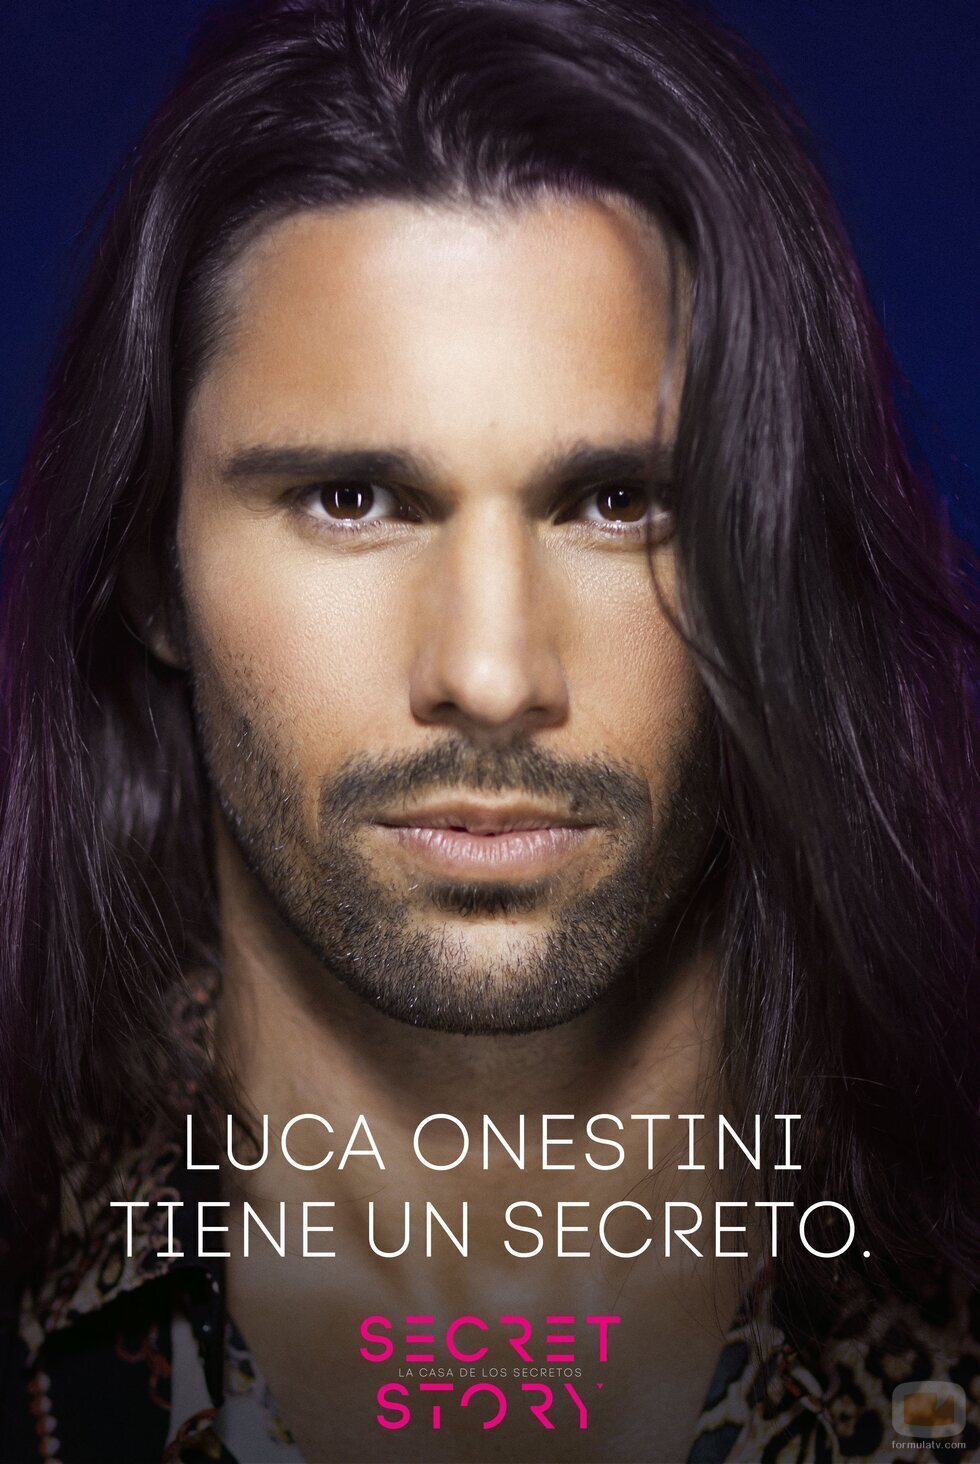 Luca Onestini, concursante de la primera edición de 'Secret Story'